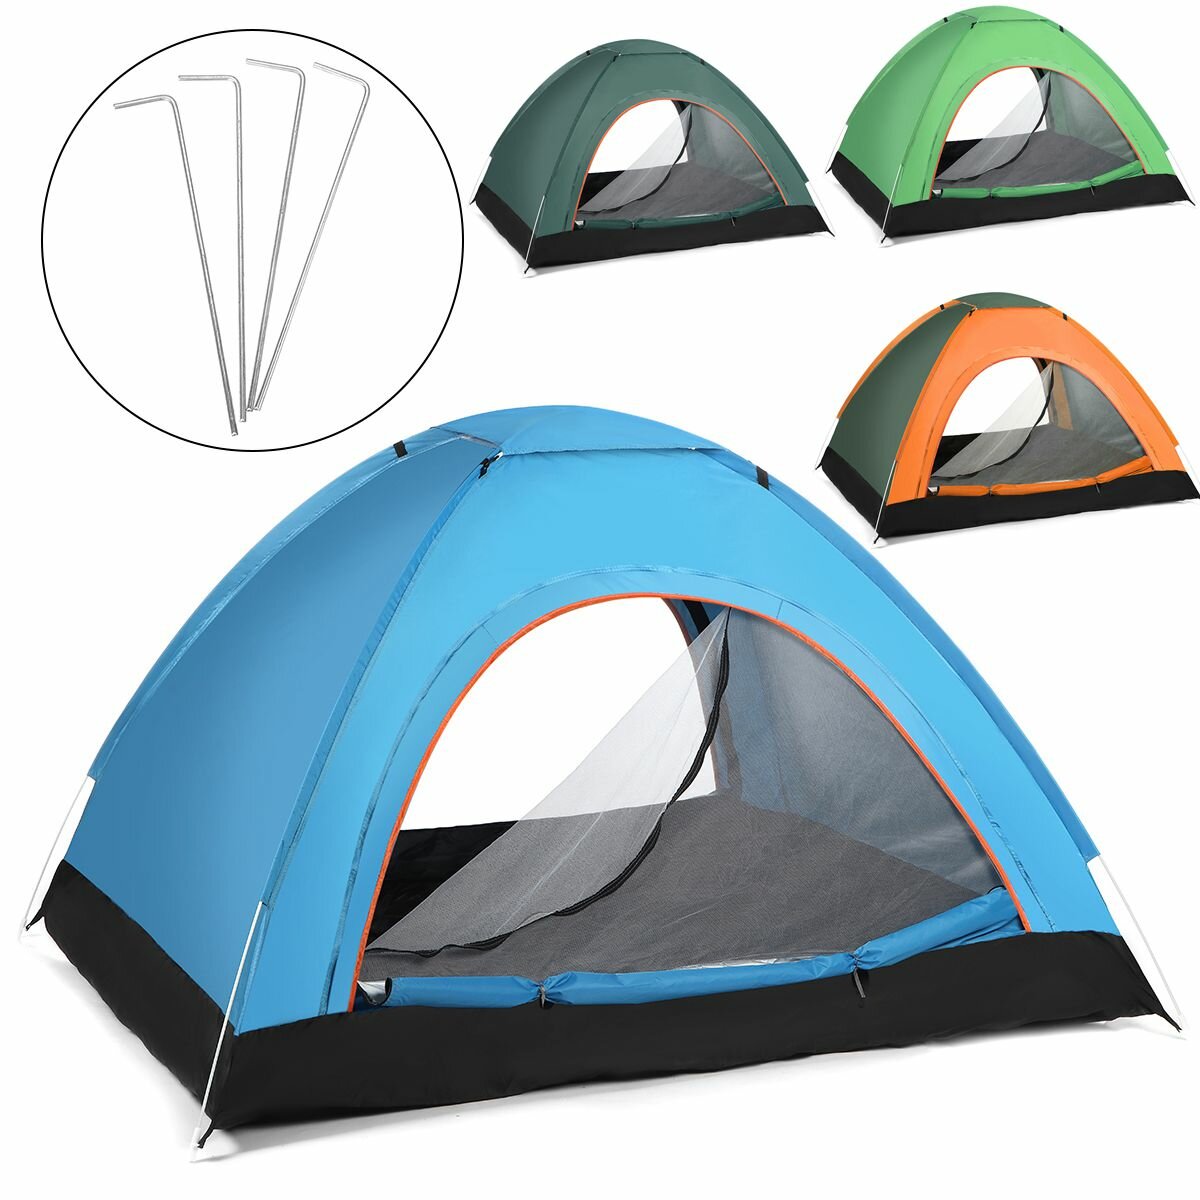 Tenda de camping para 2-3 pessoas totalmente automática, anti-UV, resistente ao vento e à água, ideal para viagens ao ar livre, caminhadas e praia.